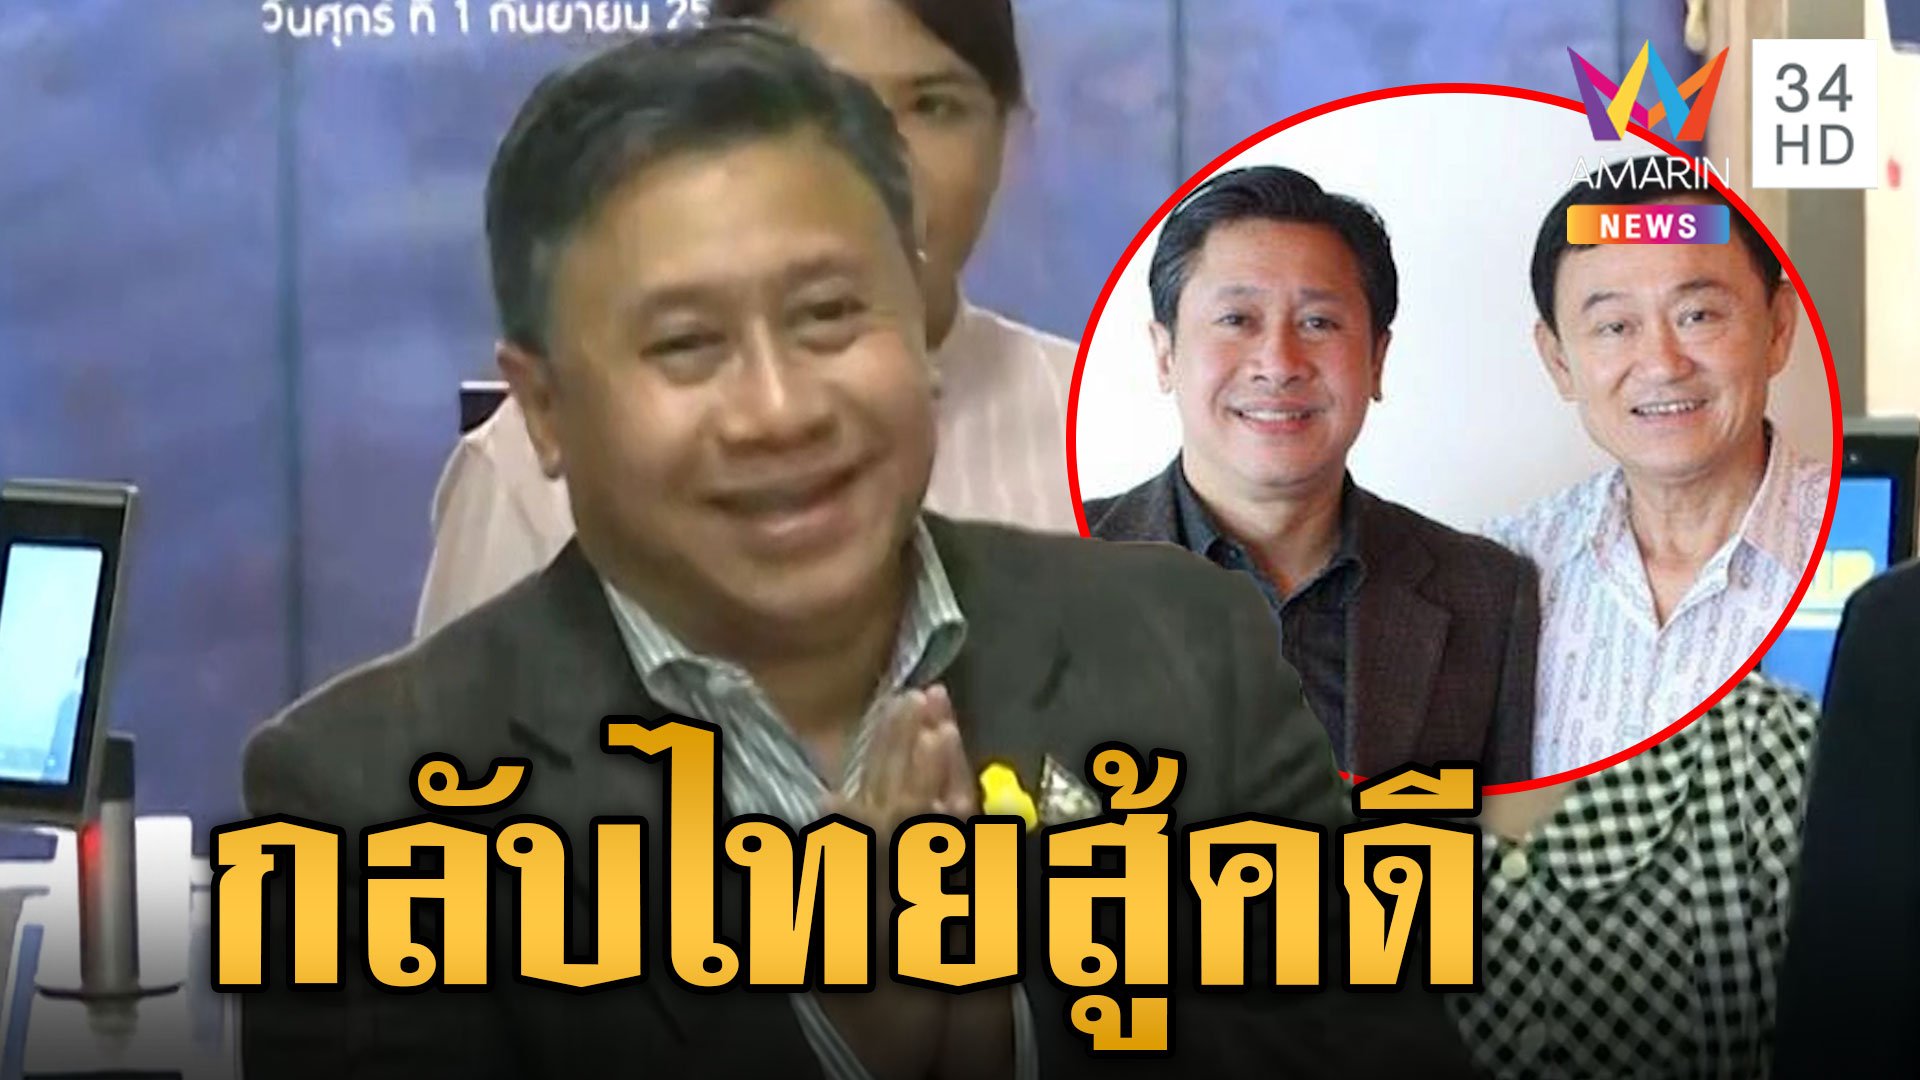 "จักรภพ เพ็ญแข" กลับถึงไทยสู้คดี ยิ้มออกได้ประกันตัว เปิดใจครั้งแรก ยันไม่มีดีลลับ | ข่าวเย็นอมรินทร์ | 28 มี.ค. 67 | AMARIN TVHD34